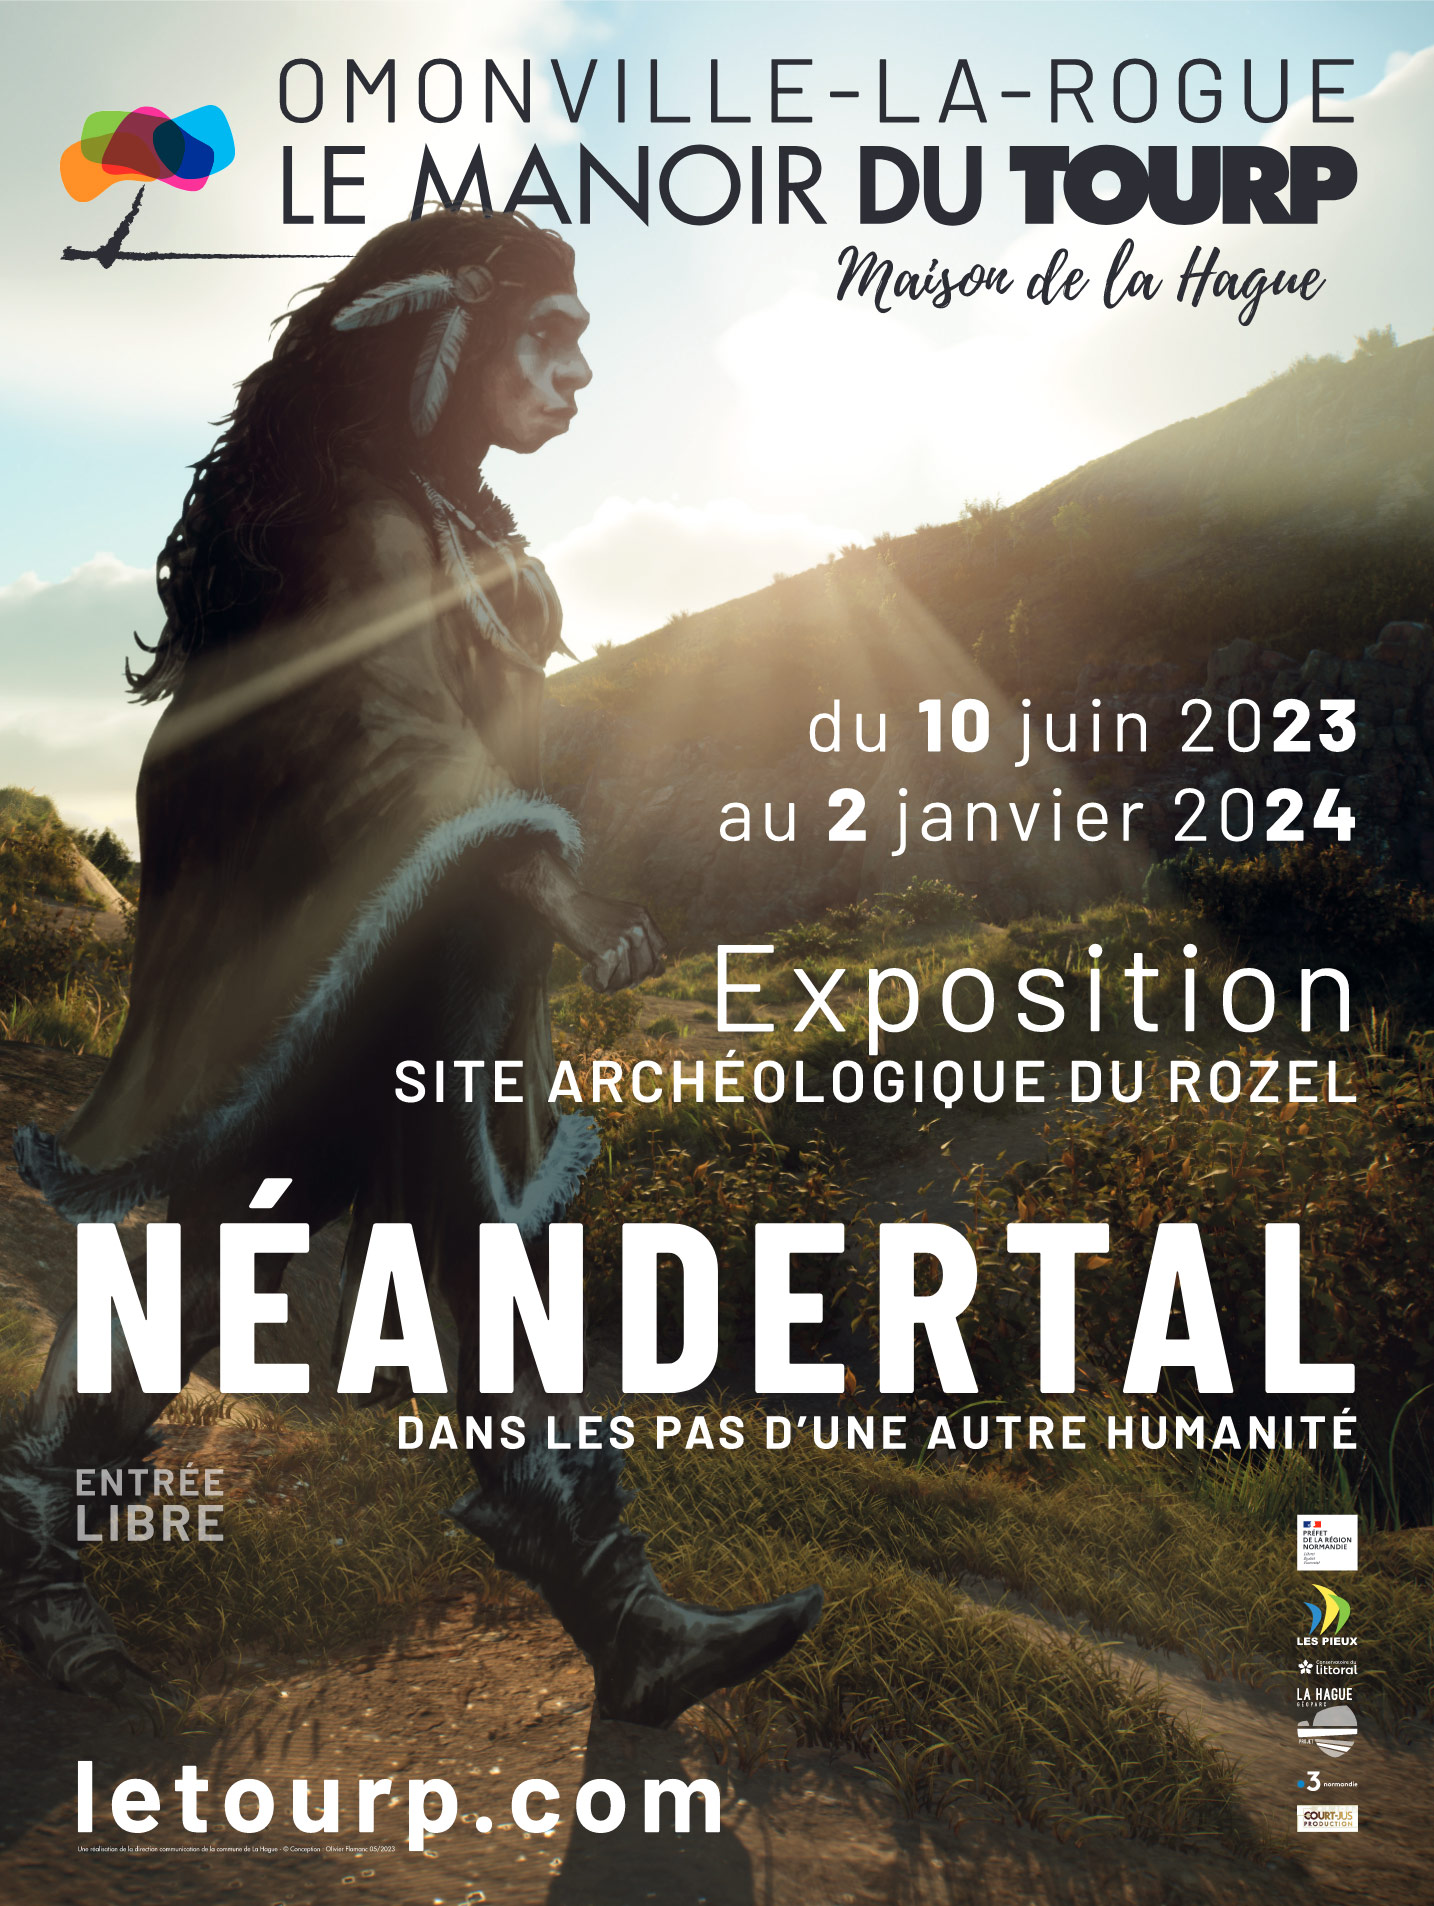 Néandertal – Dans les pas d’une autre humanité